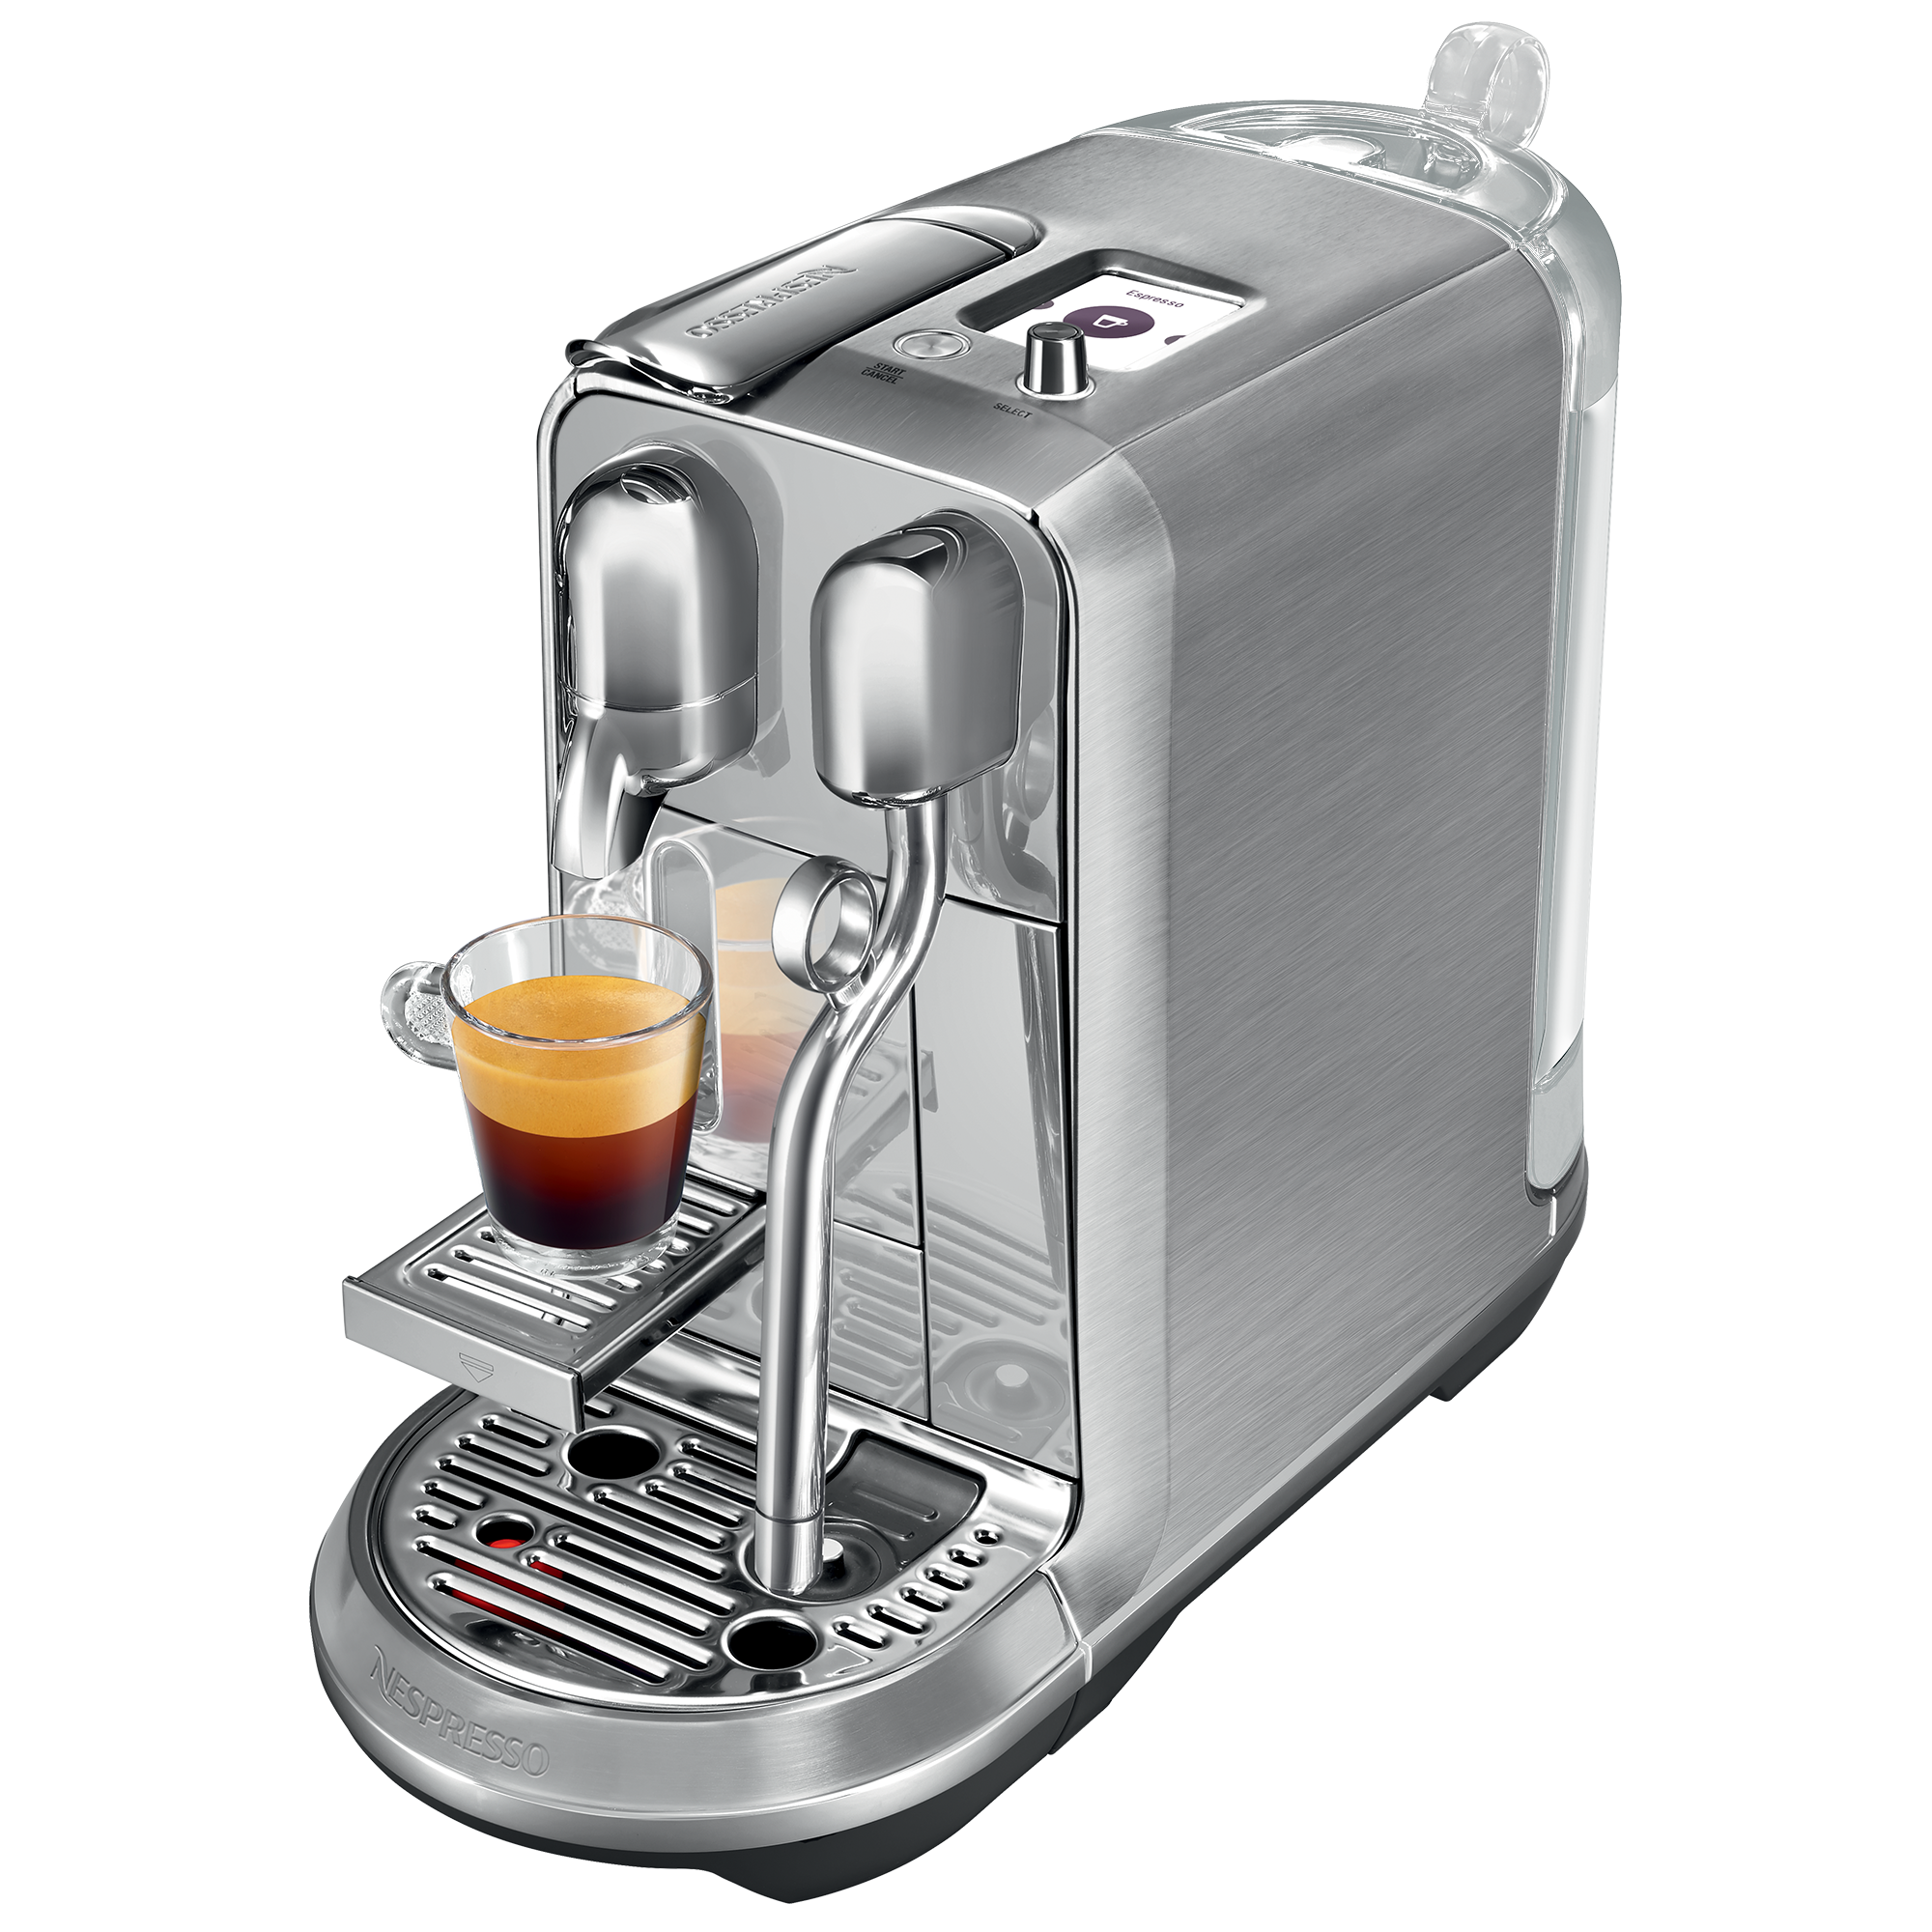 Lattissima One 膠囊咖啡機| 拿鐵咖啡機| Nespresso 台灣